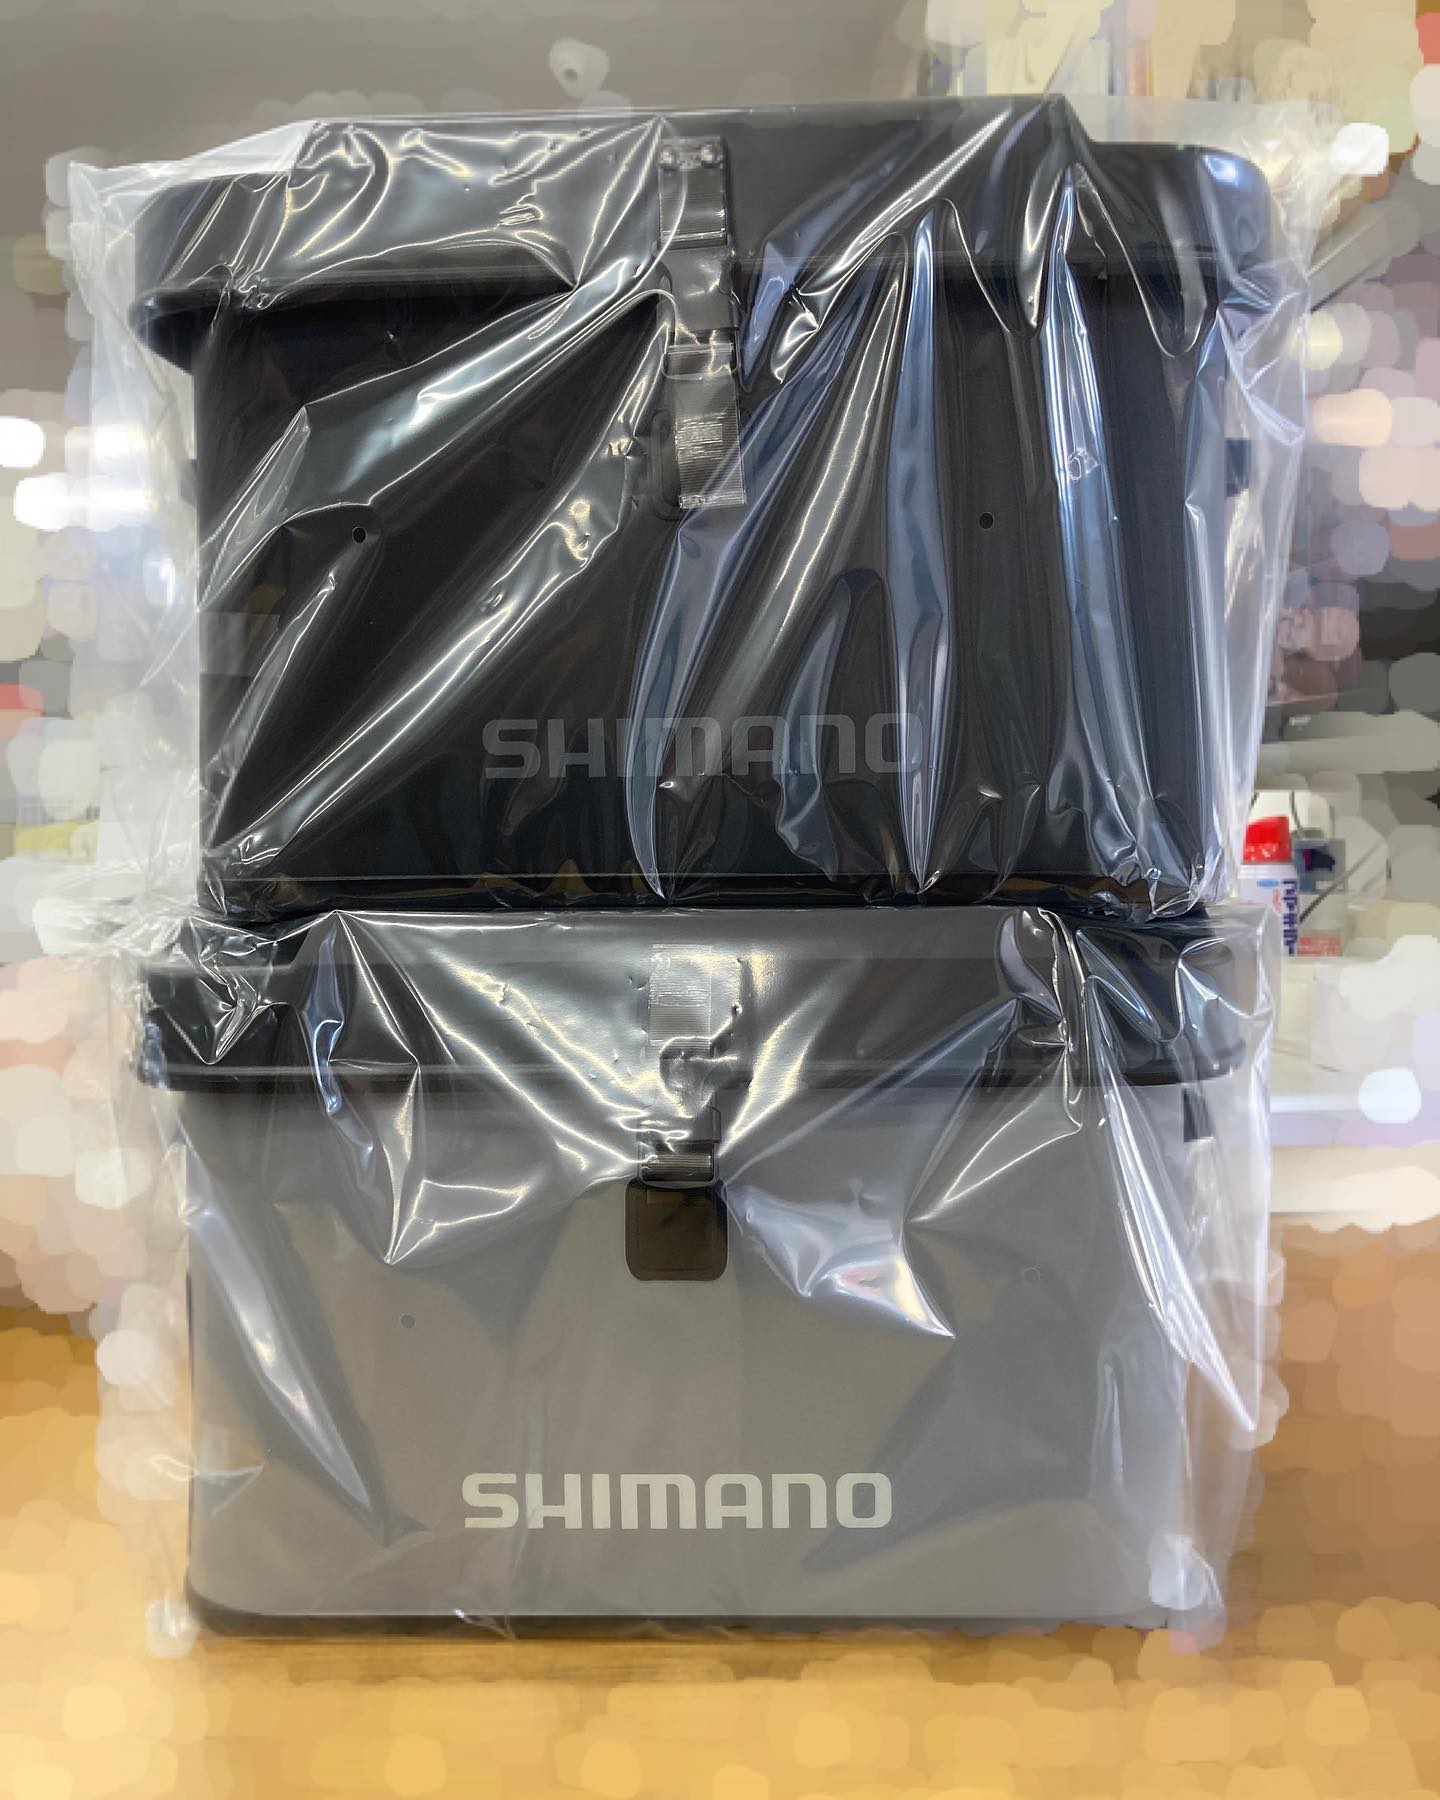 シマノ新製品「EVA タックルバッグ」